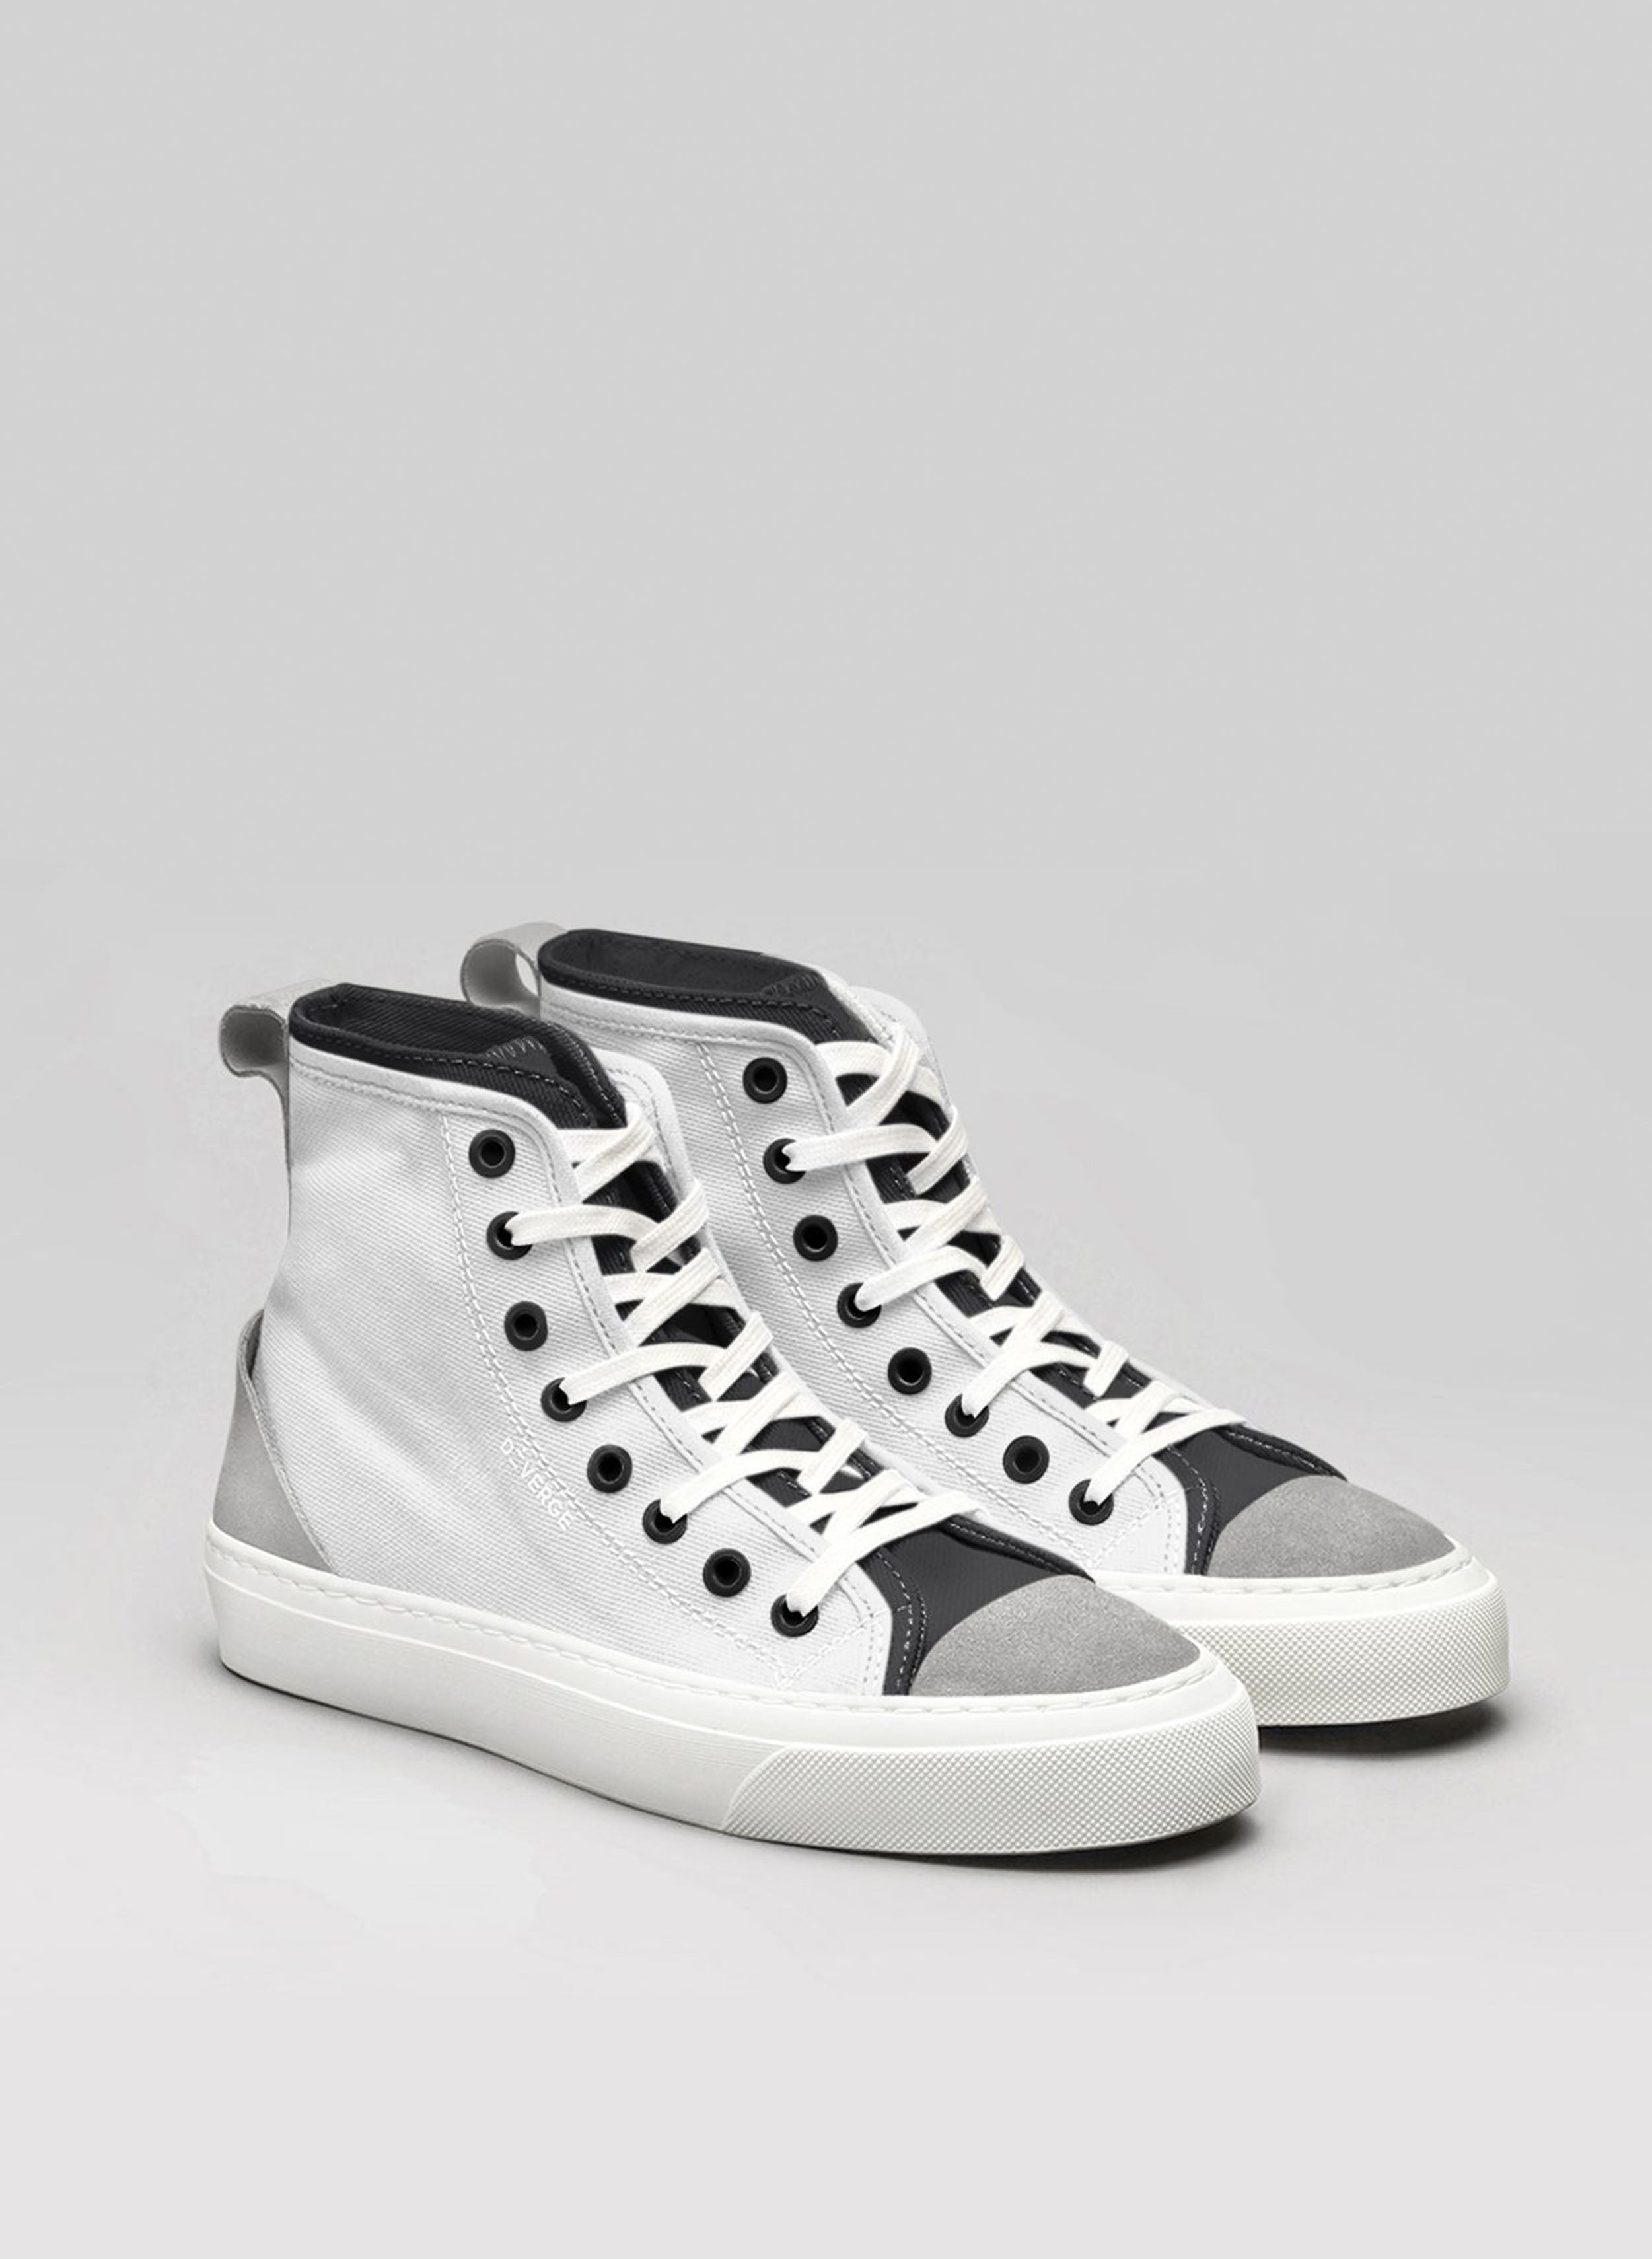 Une paire de chaussures blanches et noires customisées sneakers de Diverge.